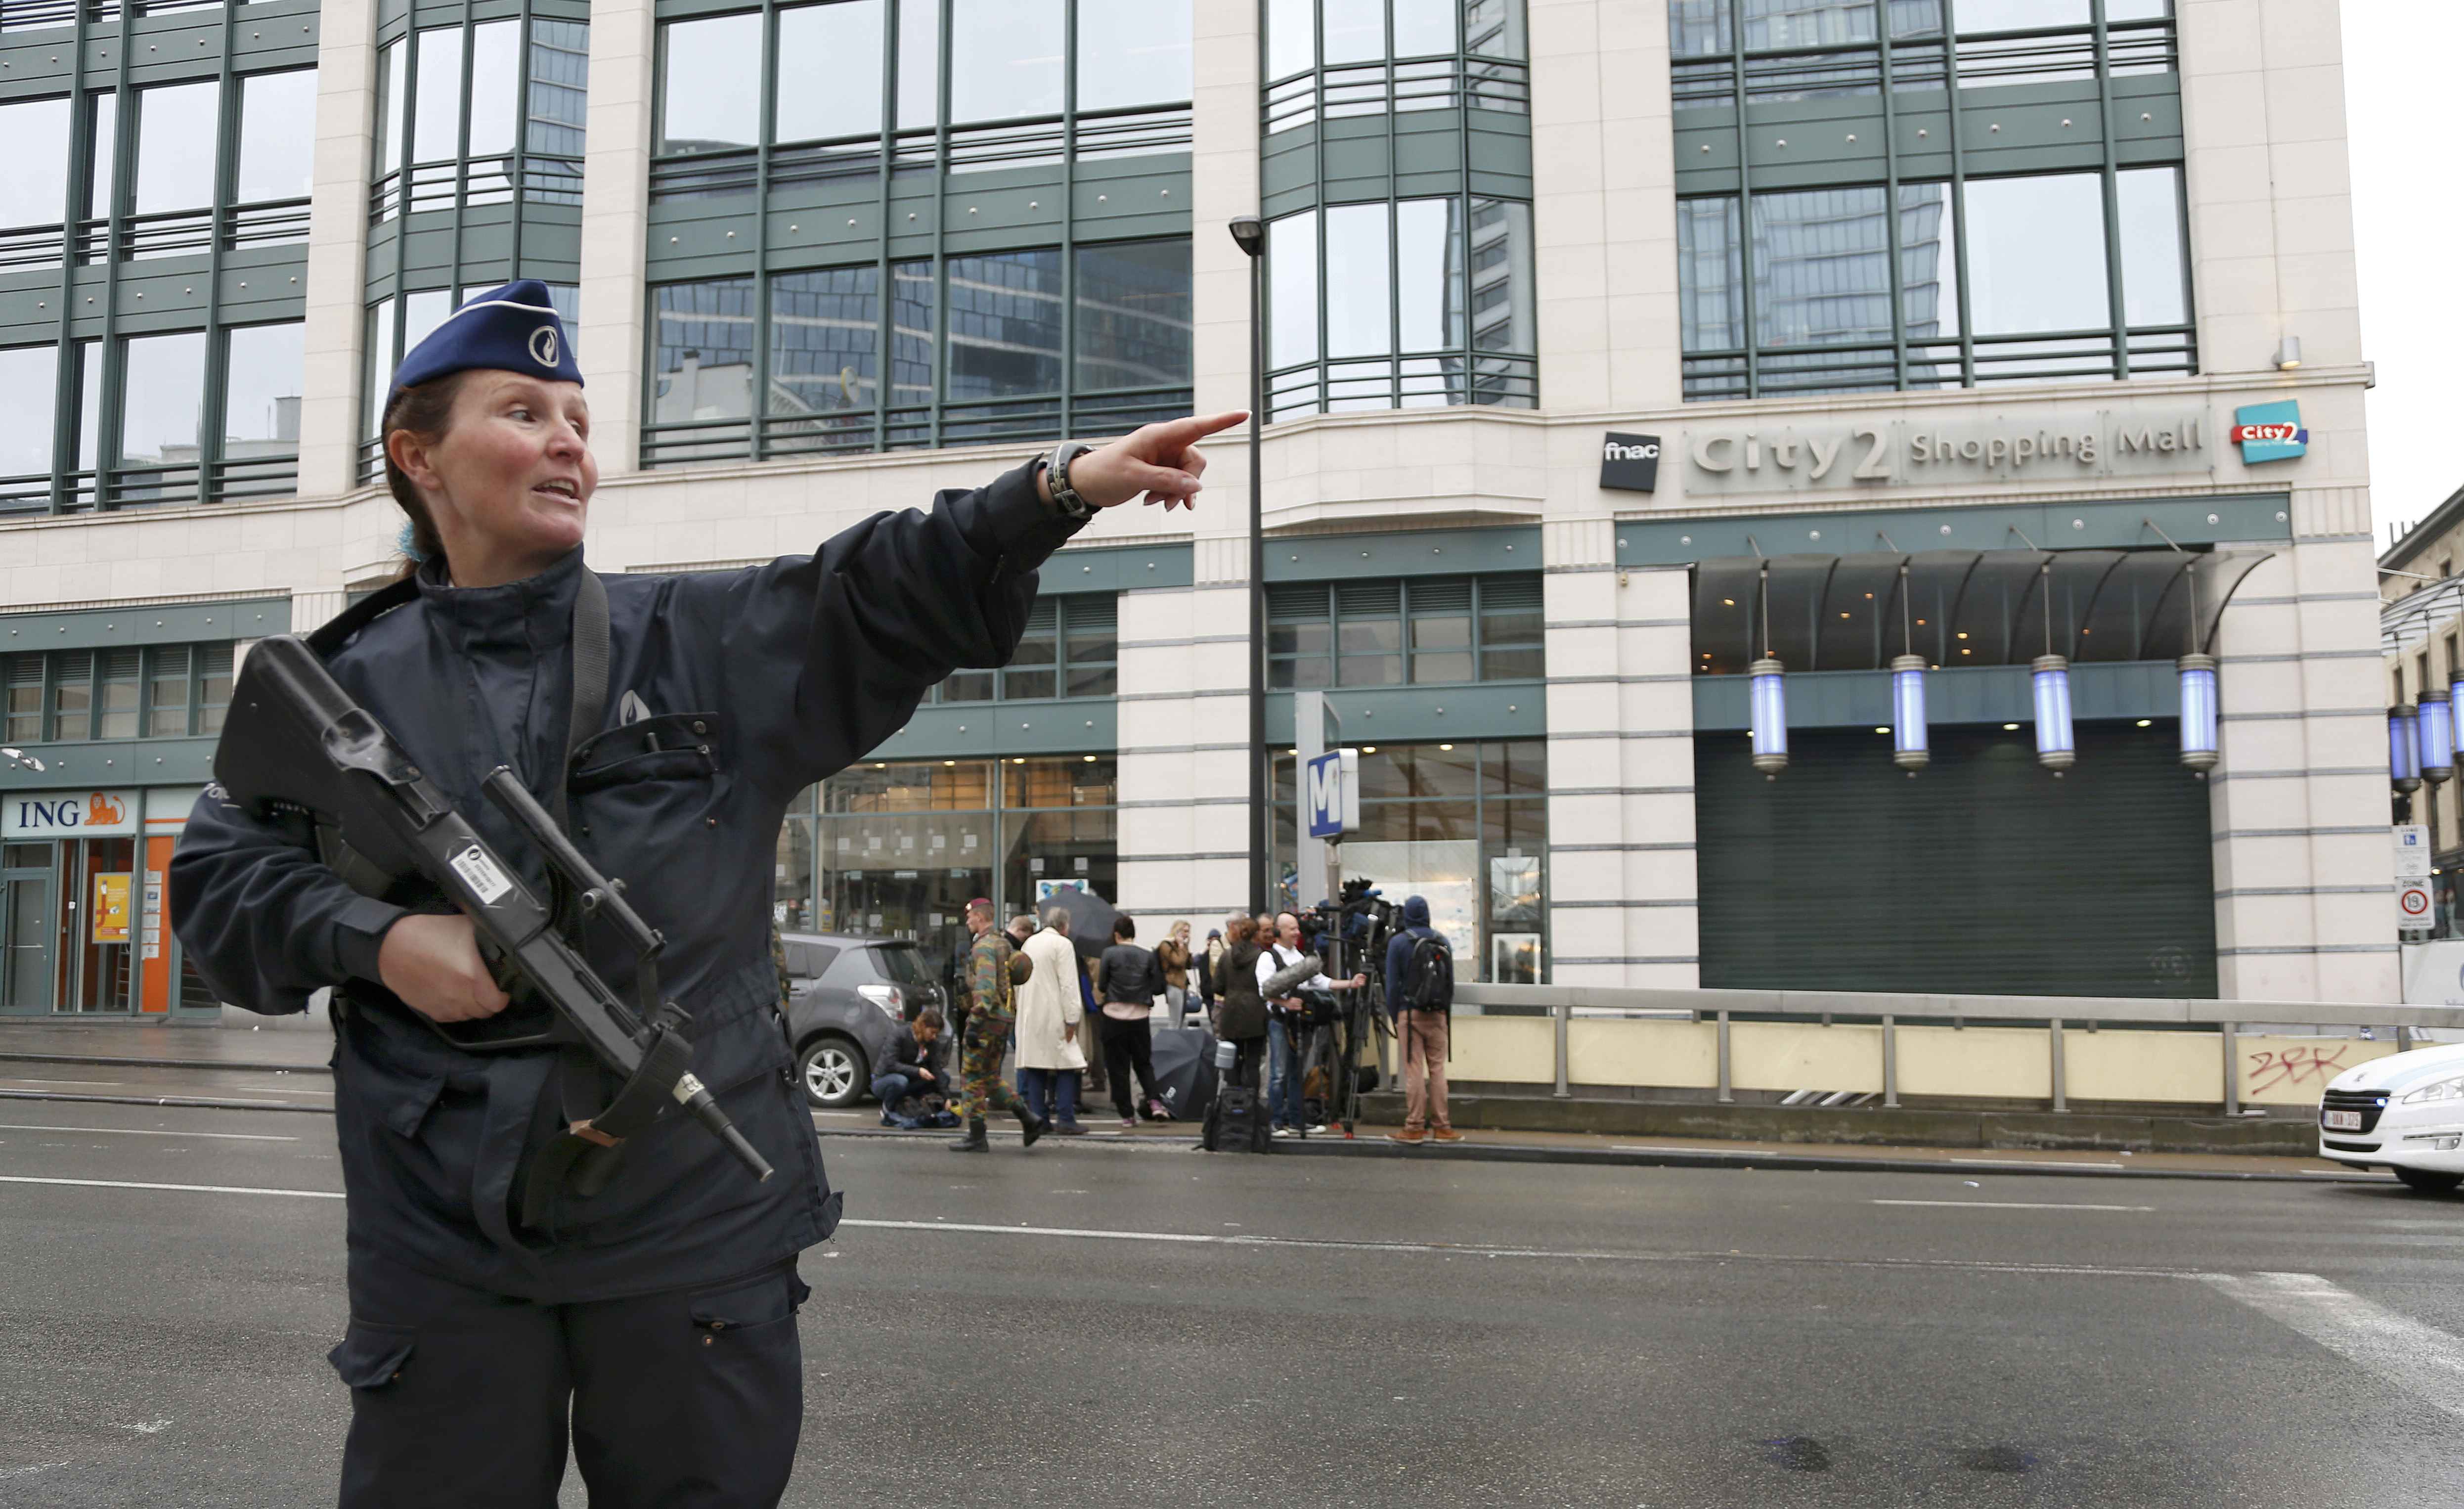 Policial dá orientações em frente a shopping City2, em Bruxelas (Bélgica), evacuado após ameaça de bomba (Foto: Francois Lenoir/Reuters)